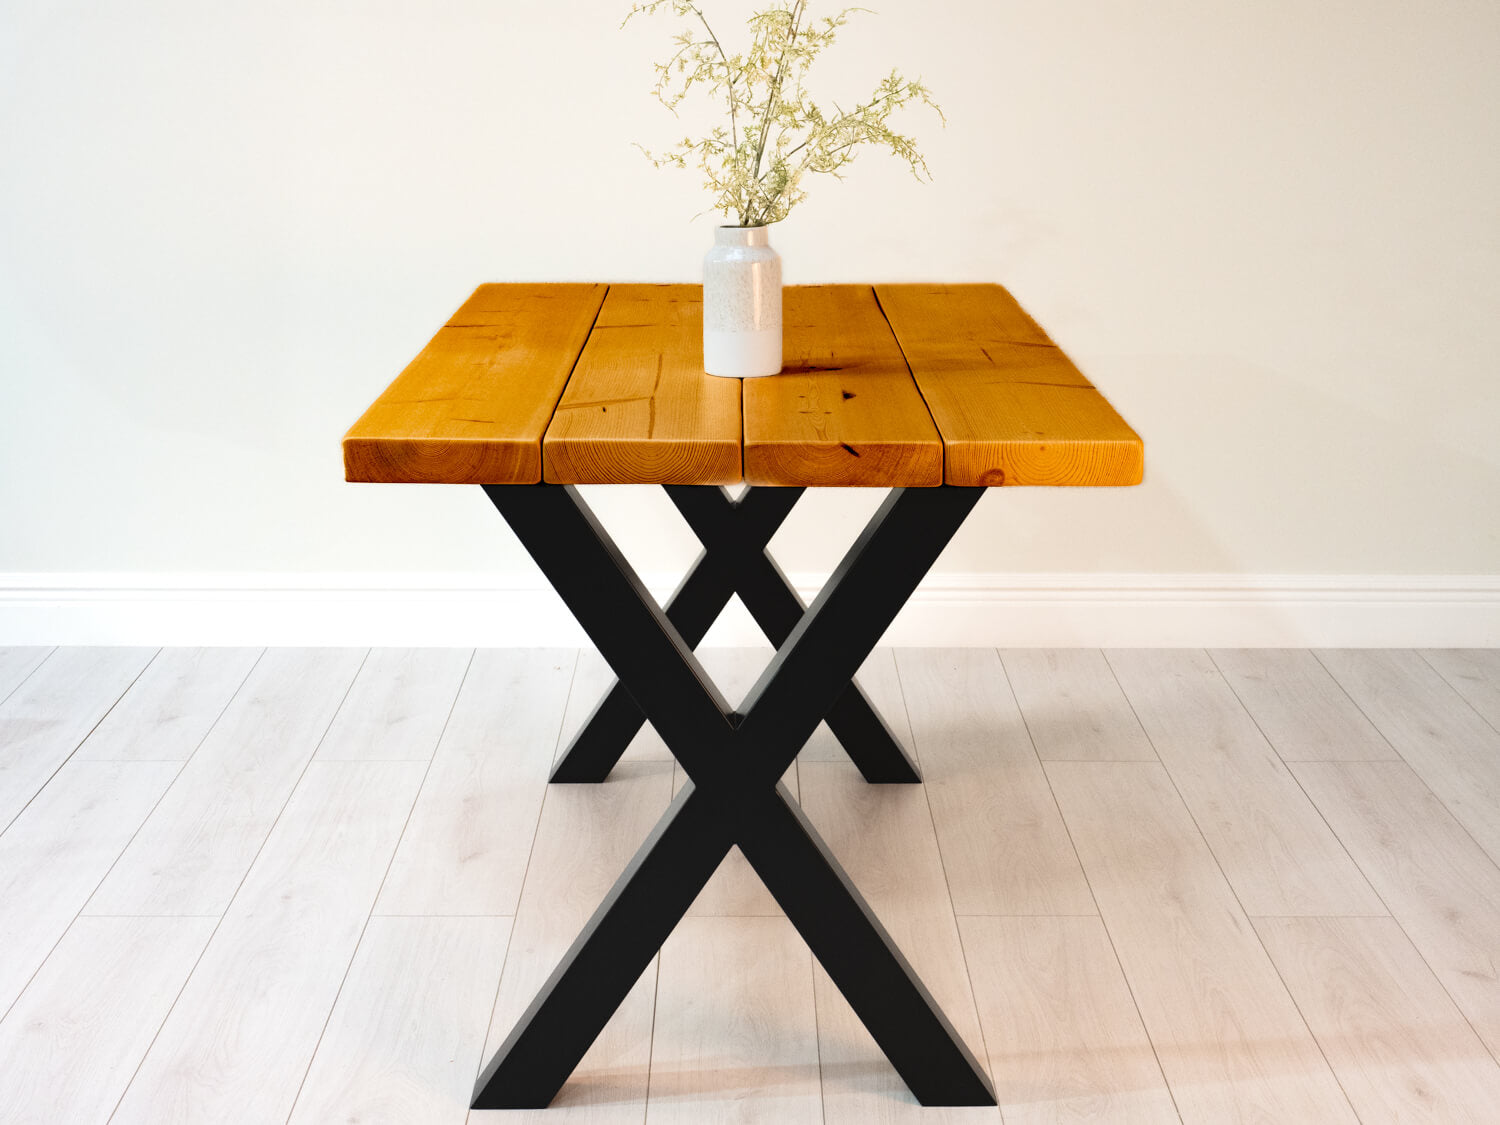 Rustic Pine Table in Medium